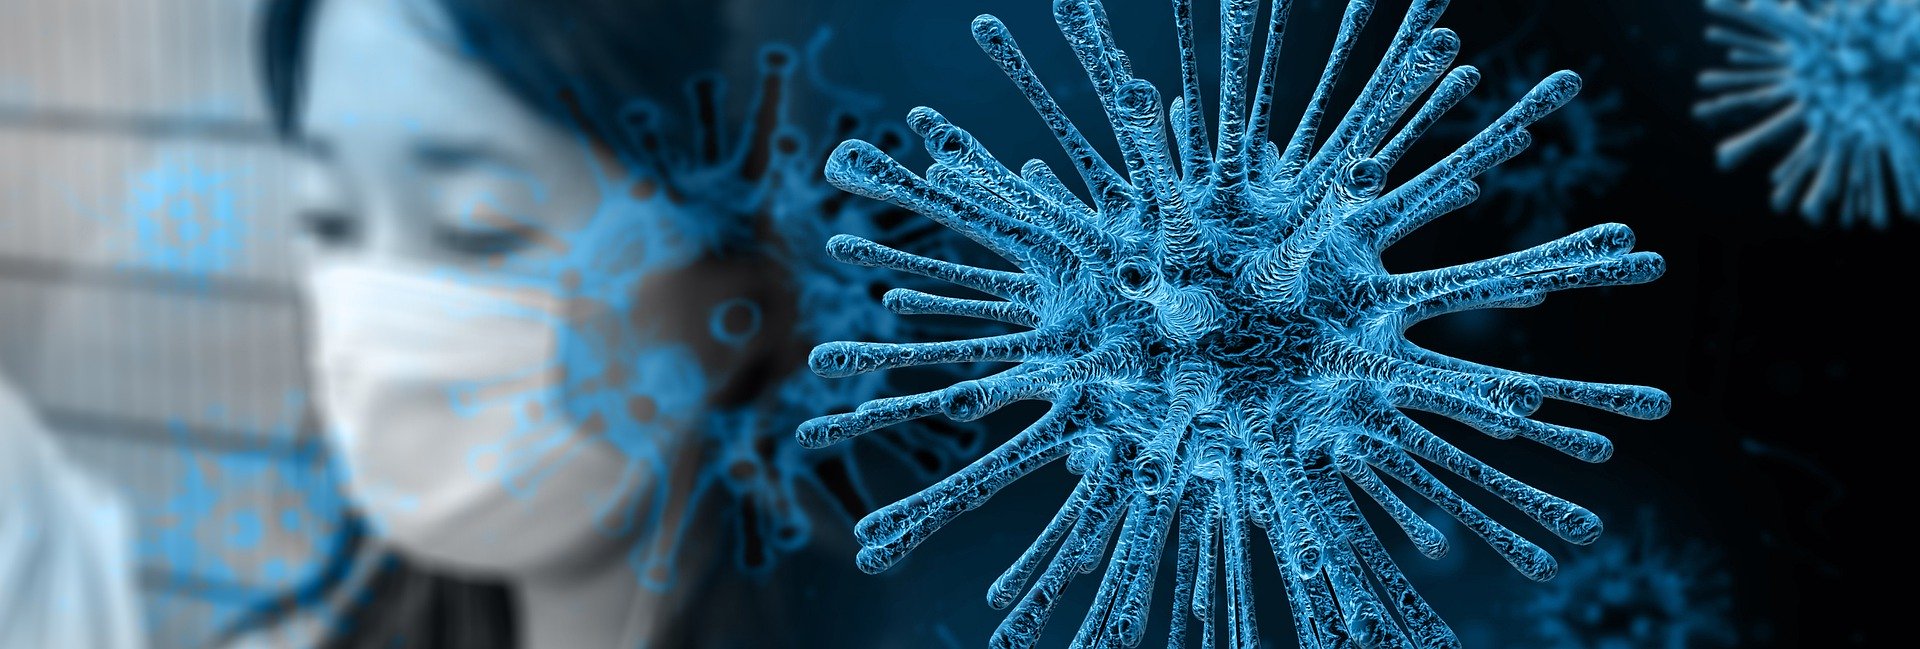 WHO ogłasza pandemię koronawirusa. W Polsce już 31 przypadków zakażeń